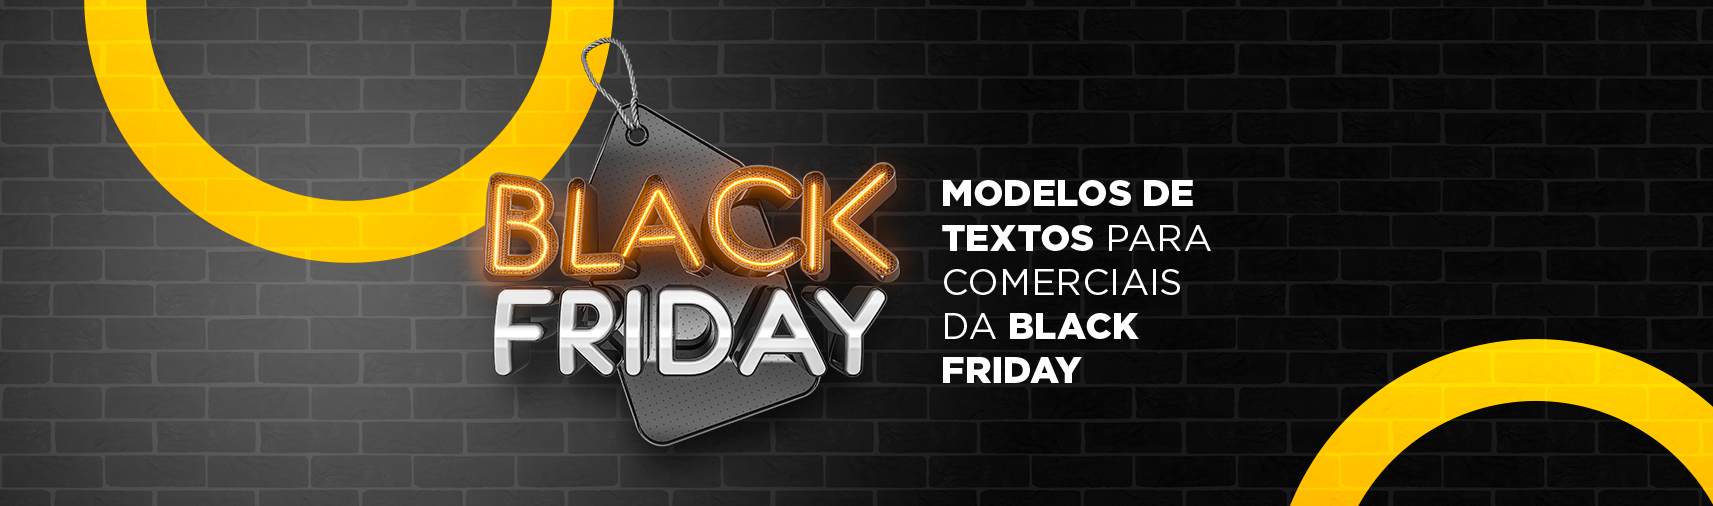 A Black Friday chegou com mais de 900 títulos em promoção na Microsoft  Store!